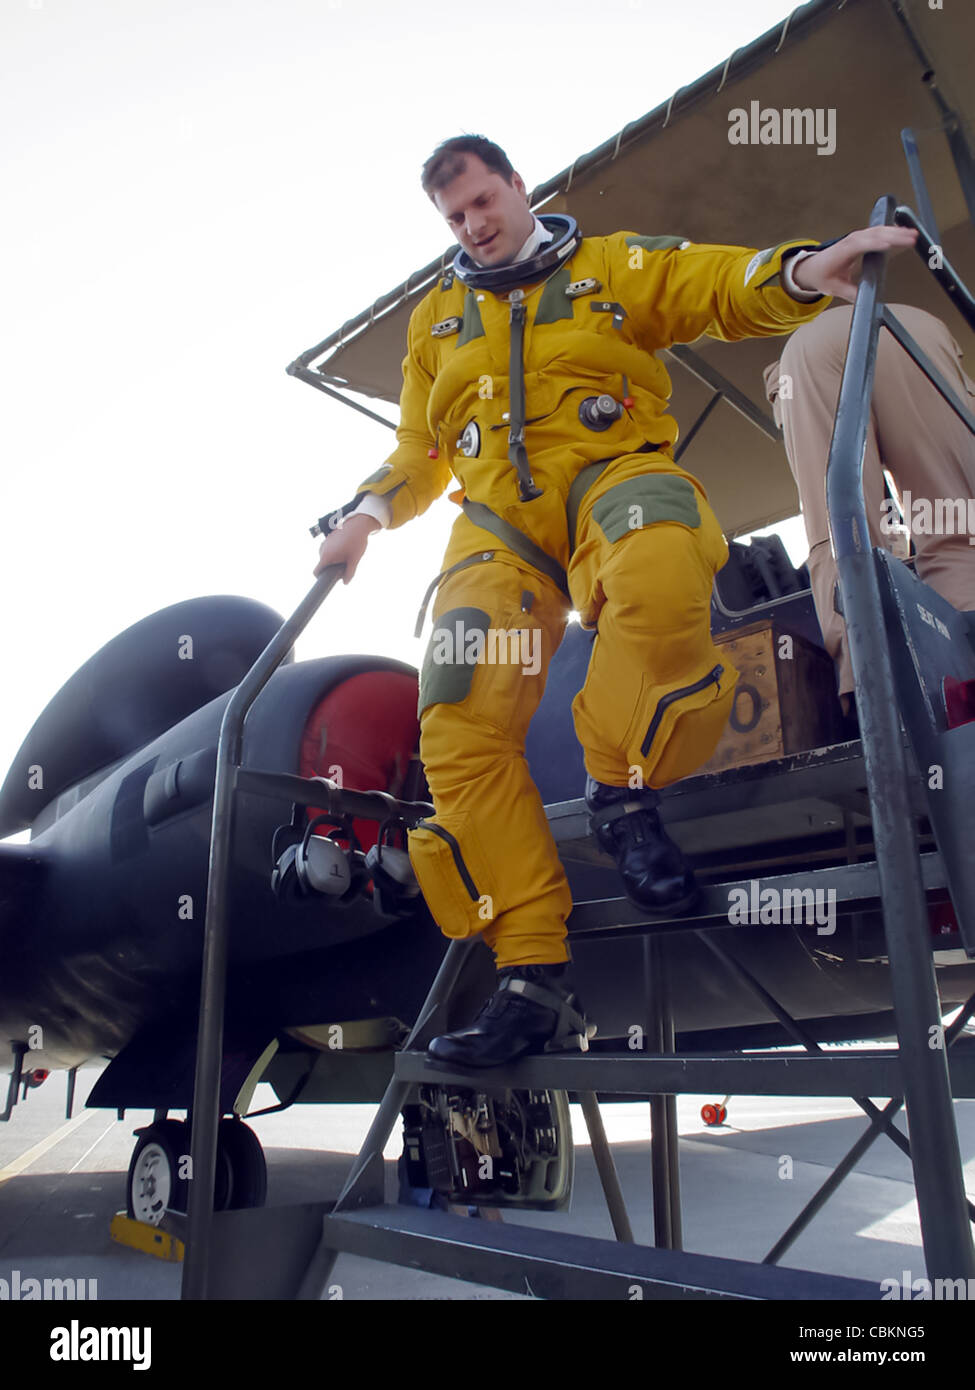 SÜDWESTASIEN -- Capt. Jeffrey Wright verlässt eine U-2 Dragon Lady nach einem Flug am 5. Februar. Die U-2 ist ein hoch aufstrichiges, multiintelligentes Aufklärungsflugzeug, das über 70,000 Fuß fliegen kann. Der Jet liefert nahezu Echtzeit-Bilder und sendet Informationen an Kriegsjäger und nationale Behörden. Captain Wright ist ein U-2-Pilot mit dem 9th Expeditionary Reconnaissance Squadron und wird von der Beale Air Force Base, Kalifornien, eingesetzt. Stockfoto